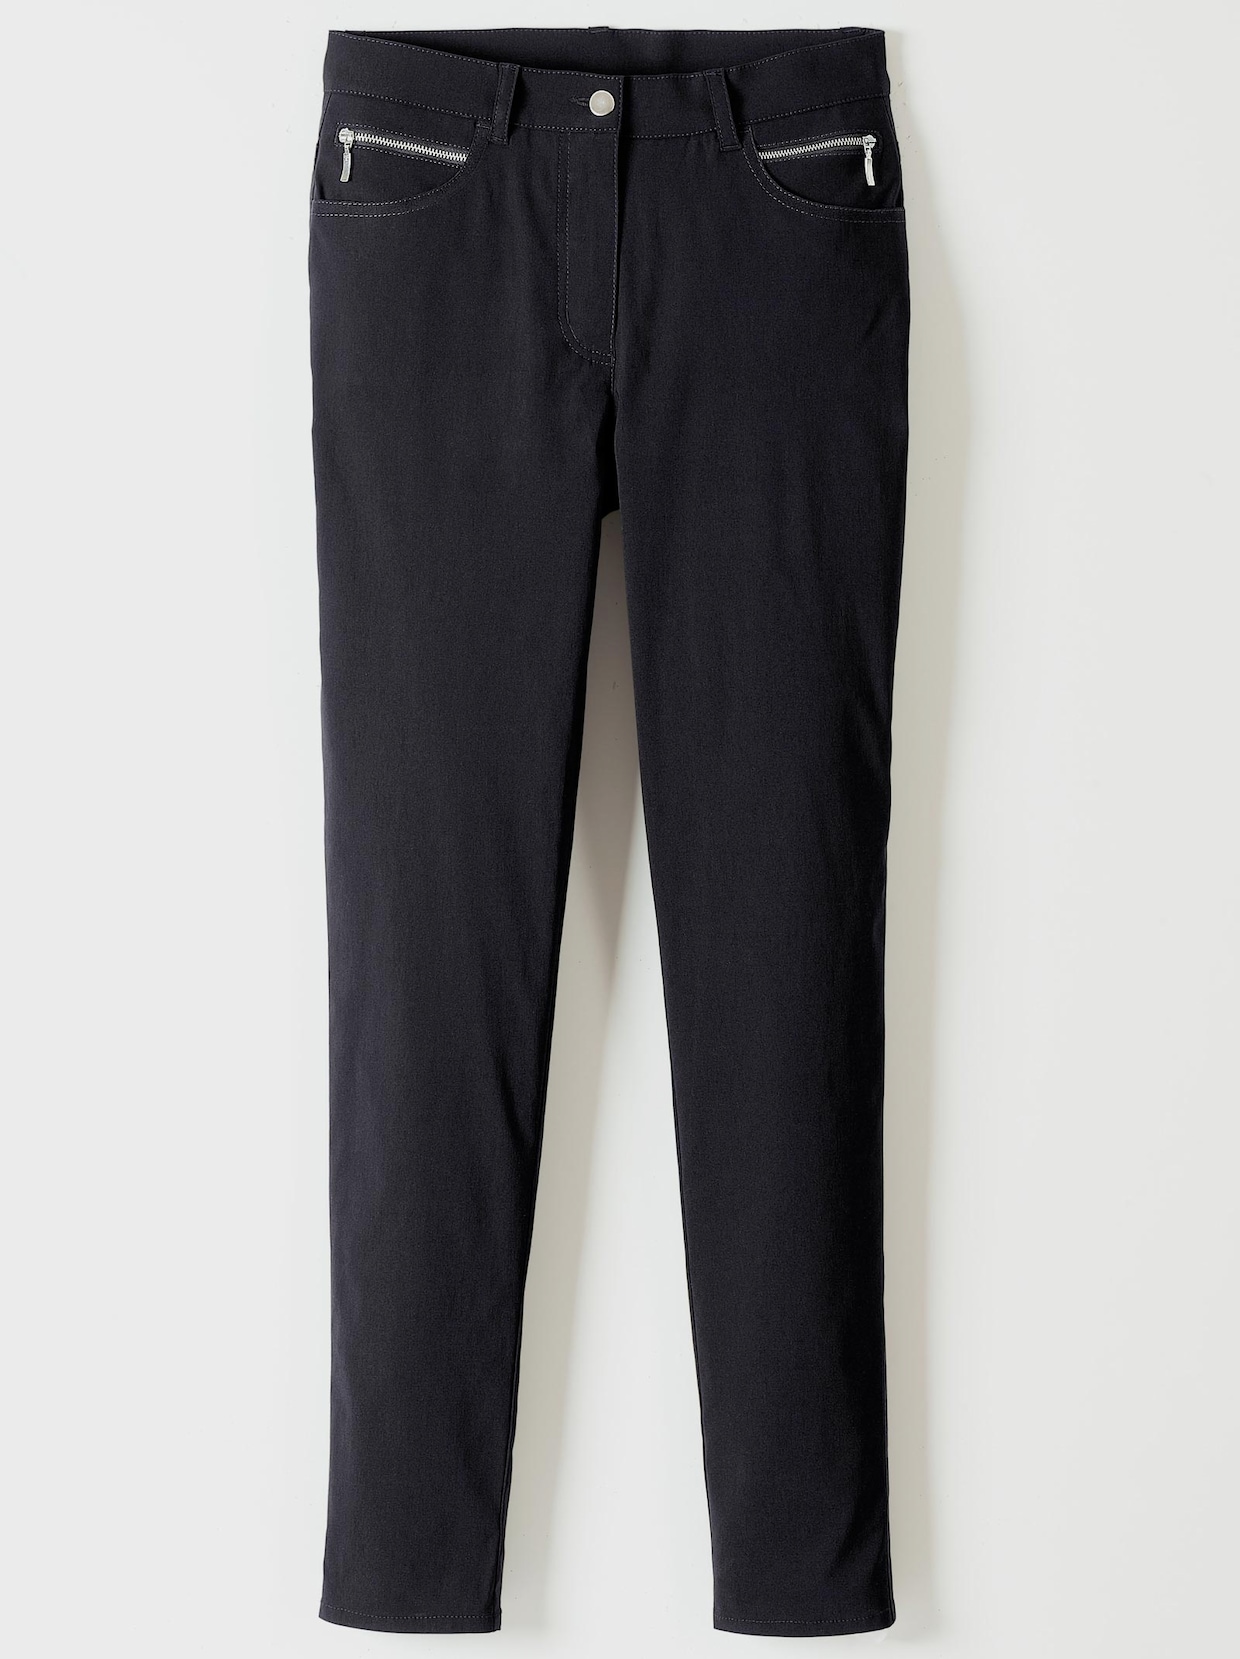 Stehmann Comfort line Pantalon thermique - noir